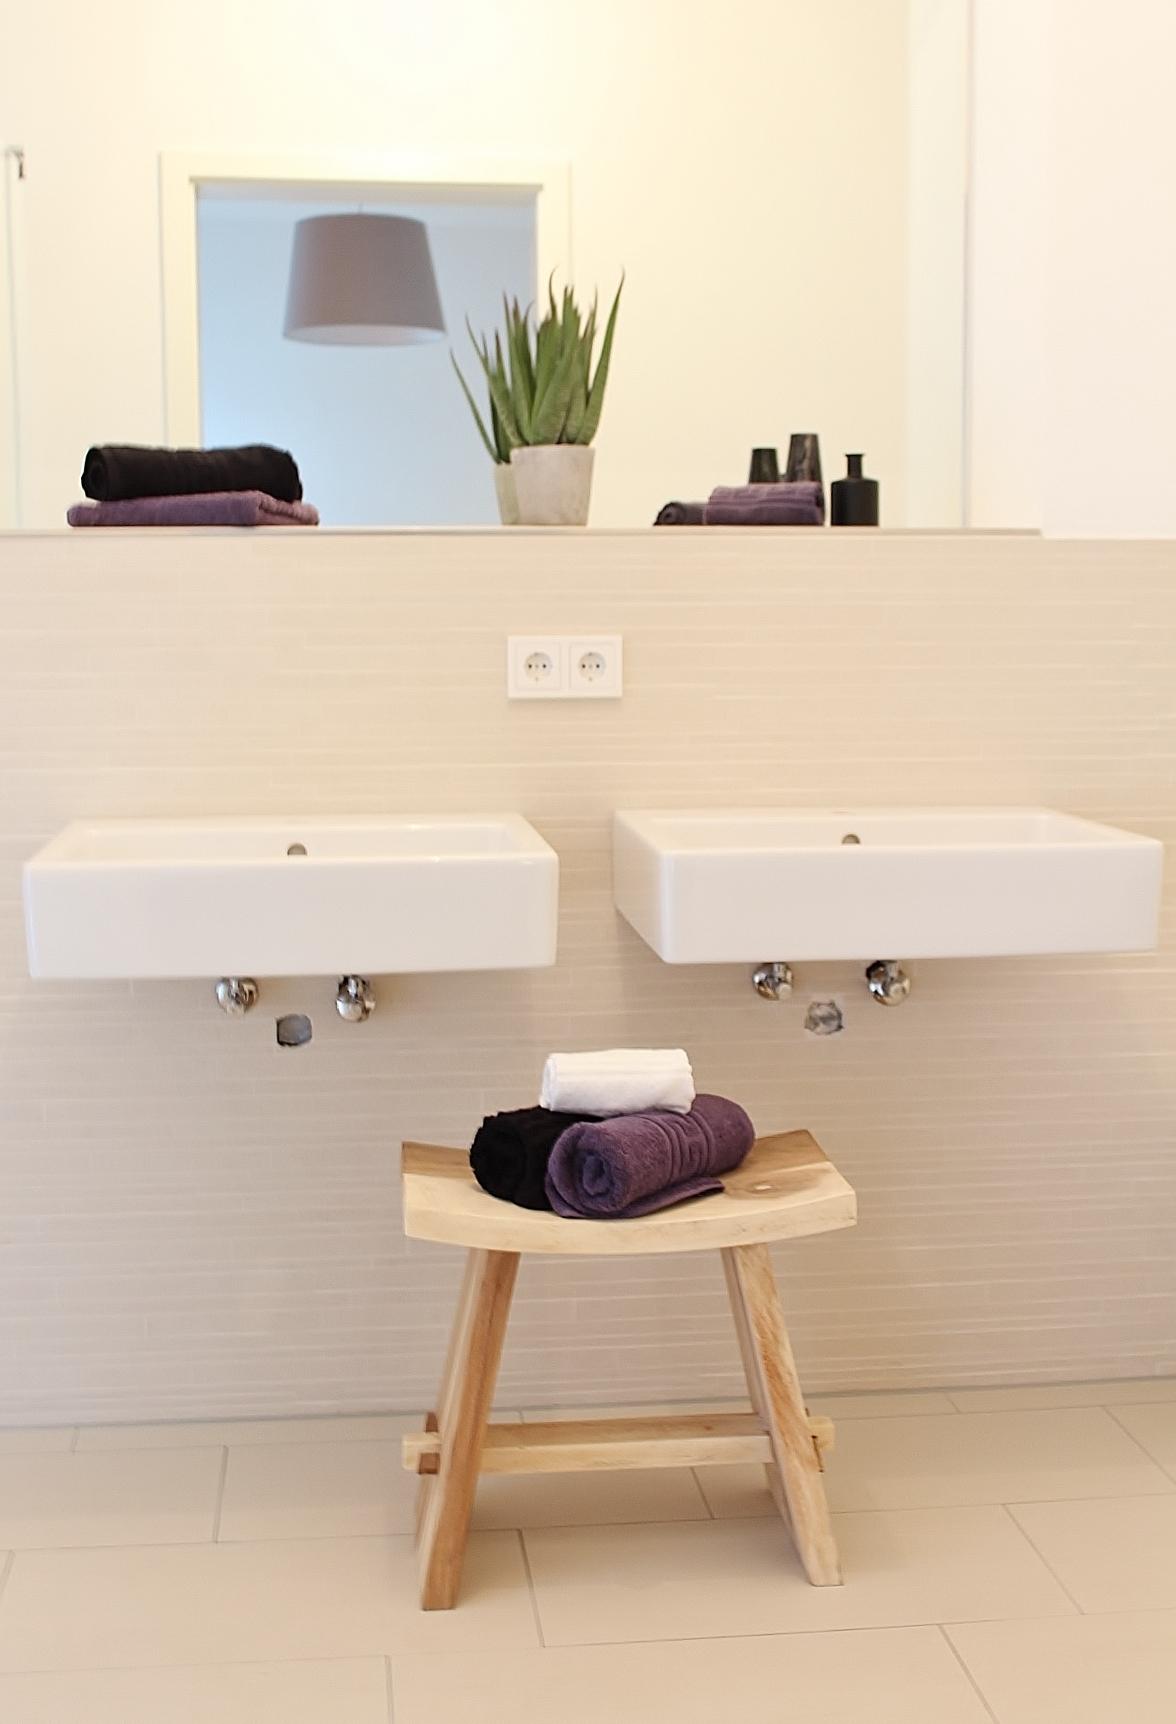 Badezimmer minimalistisch #minimalistischesbadezimmer ©Nicole Schütz Home Staging